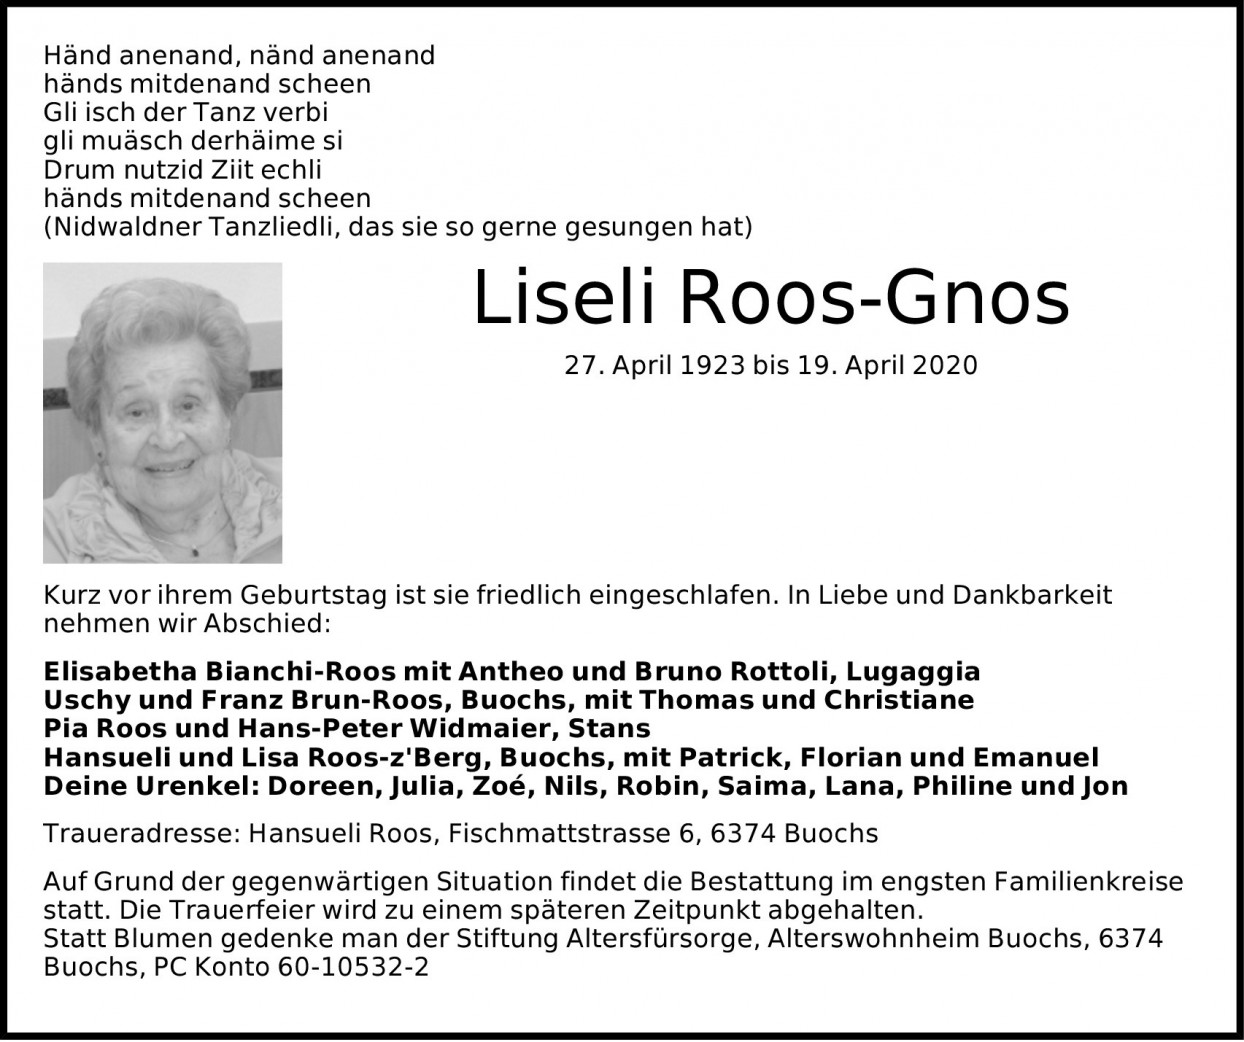 Liseli Roos-Gnos